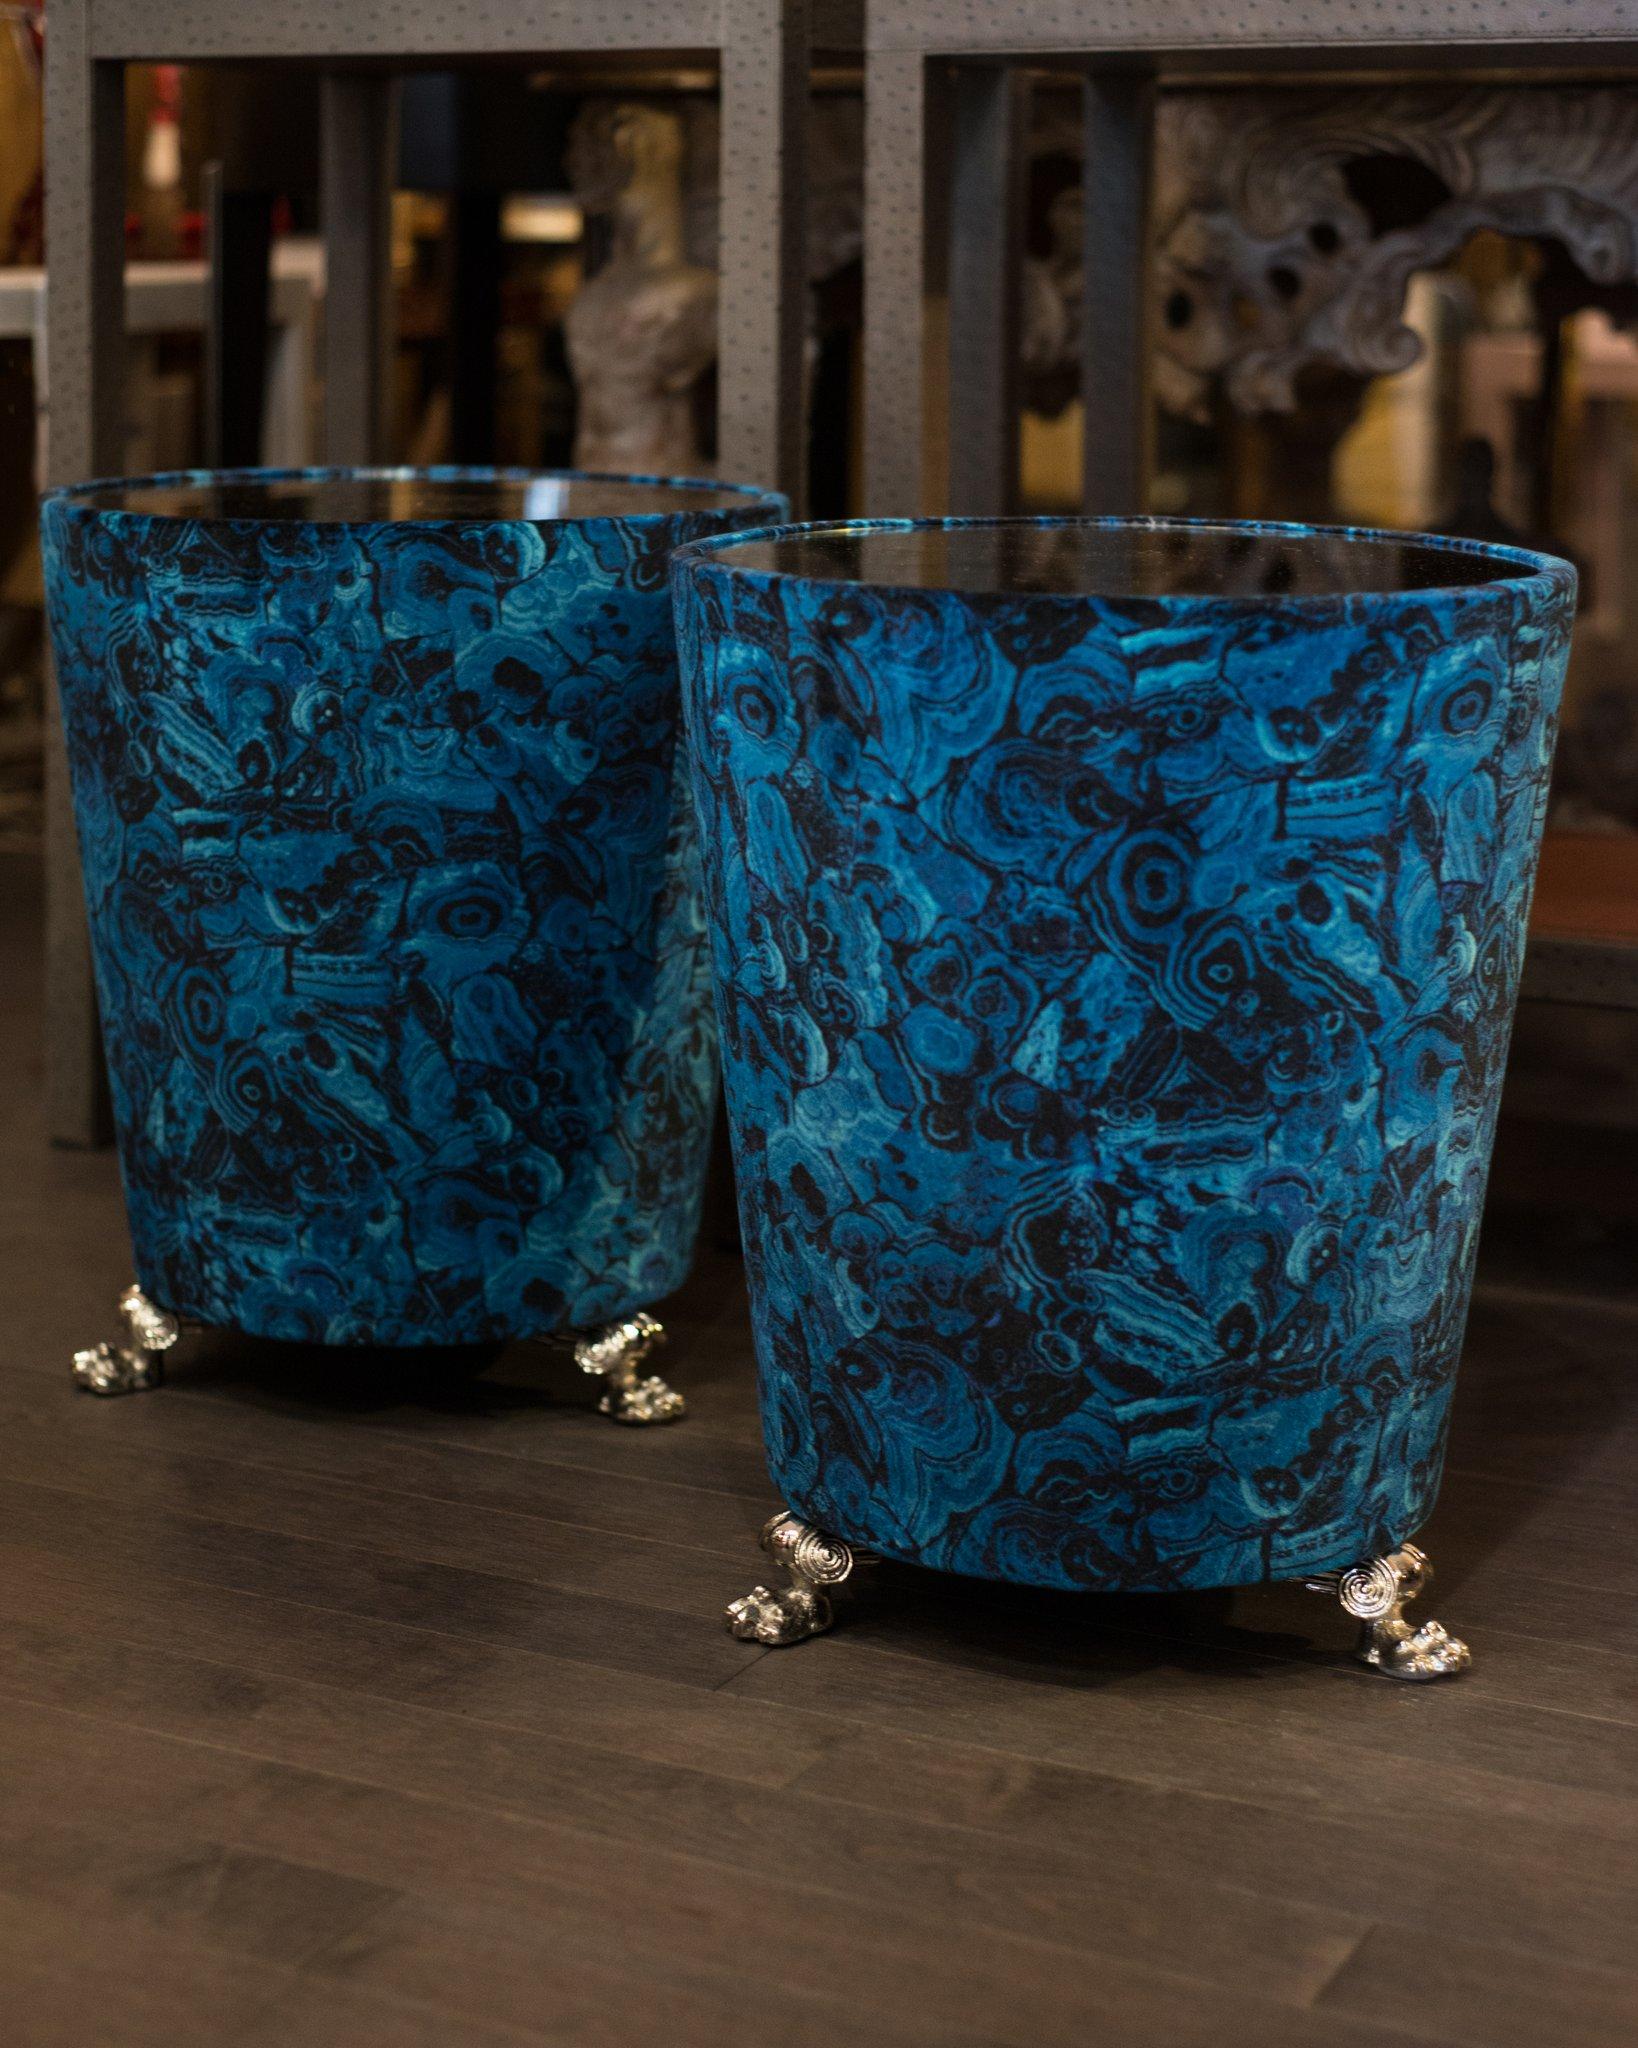 Ein neues exklusives Design von Studio Maison Nurita, extravagante handgefertigte Beistelltische aus blauem Achatsamt. Die Perfektion liegt im Detail. Diese reichhaltigen Tische sind mit einem Nobilis-Stoff gepolstert, haben antik verspiegelte